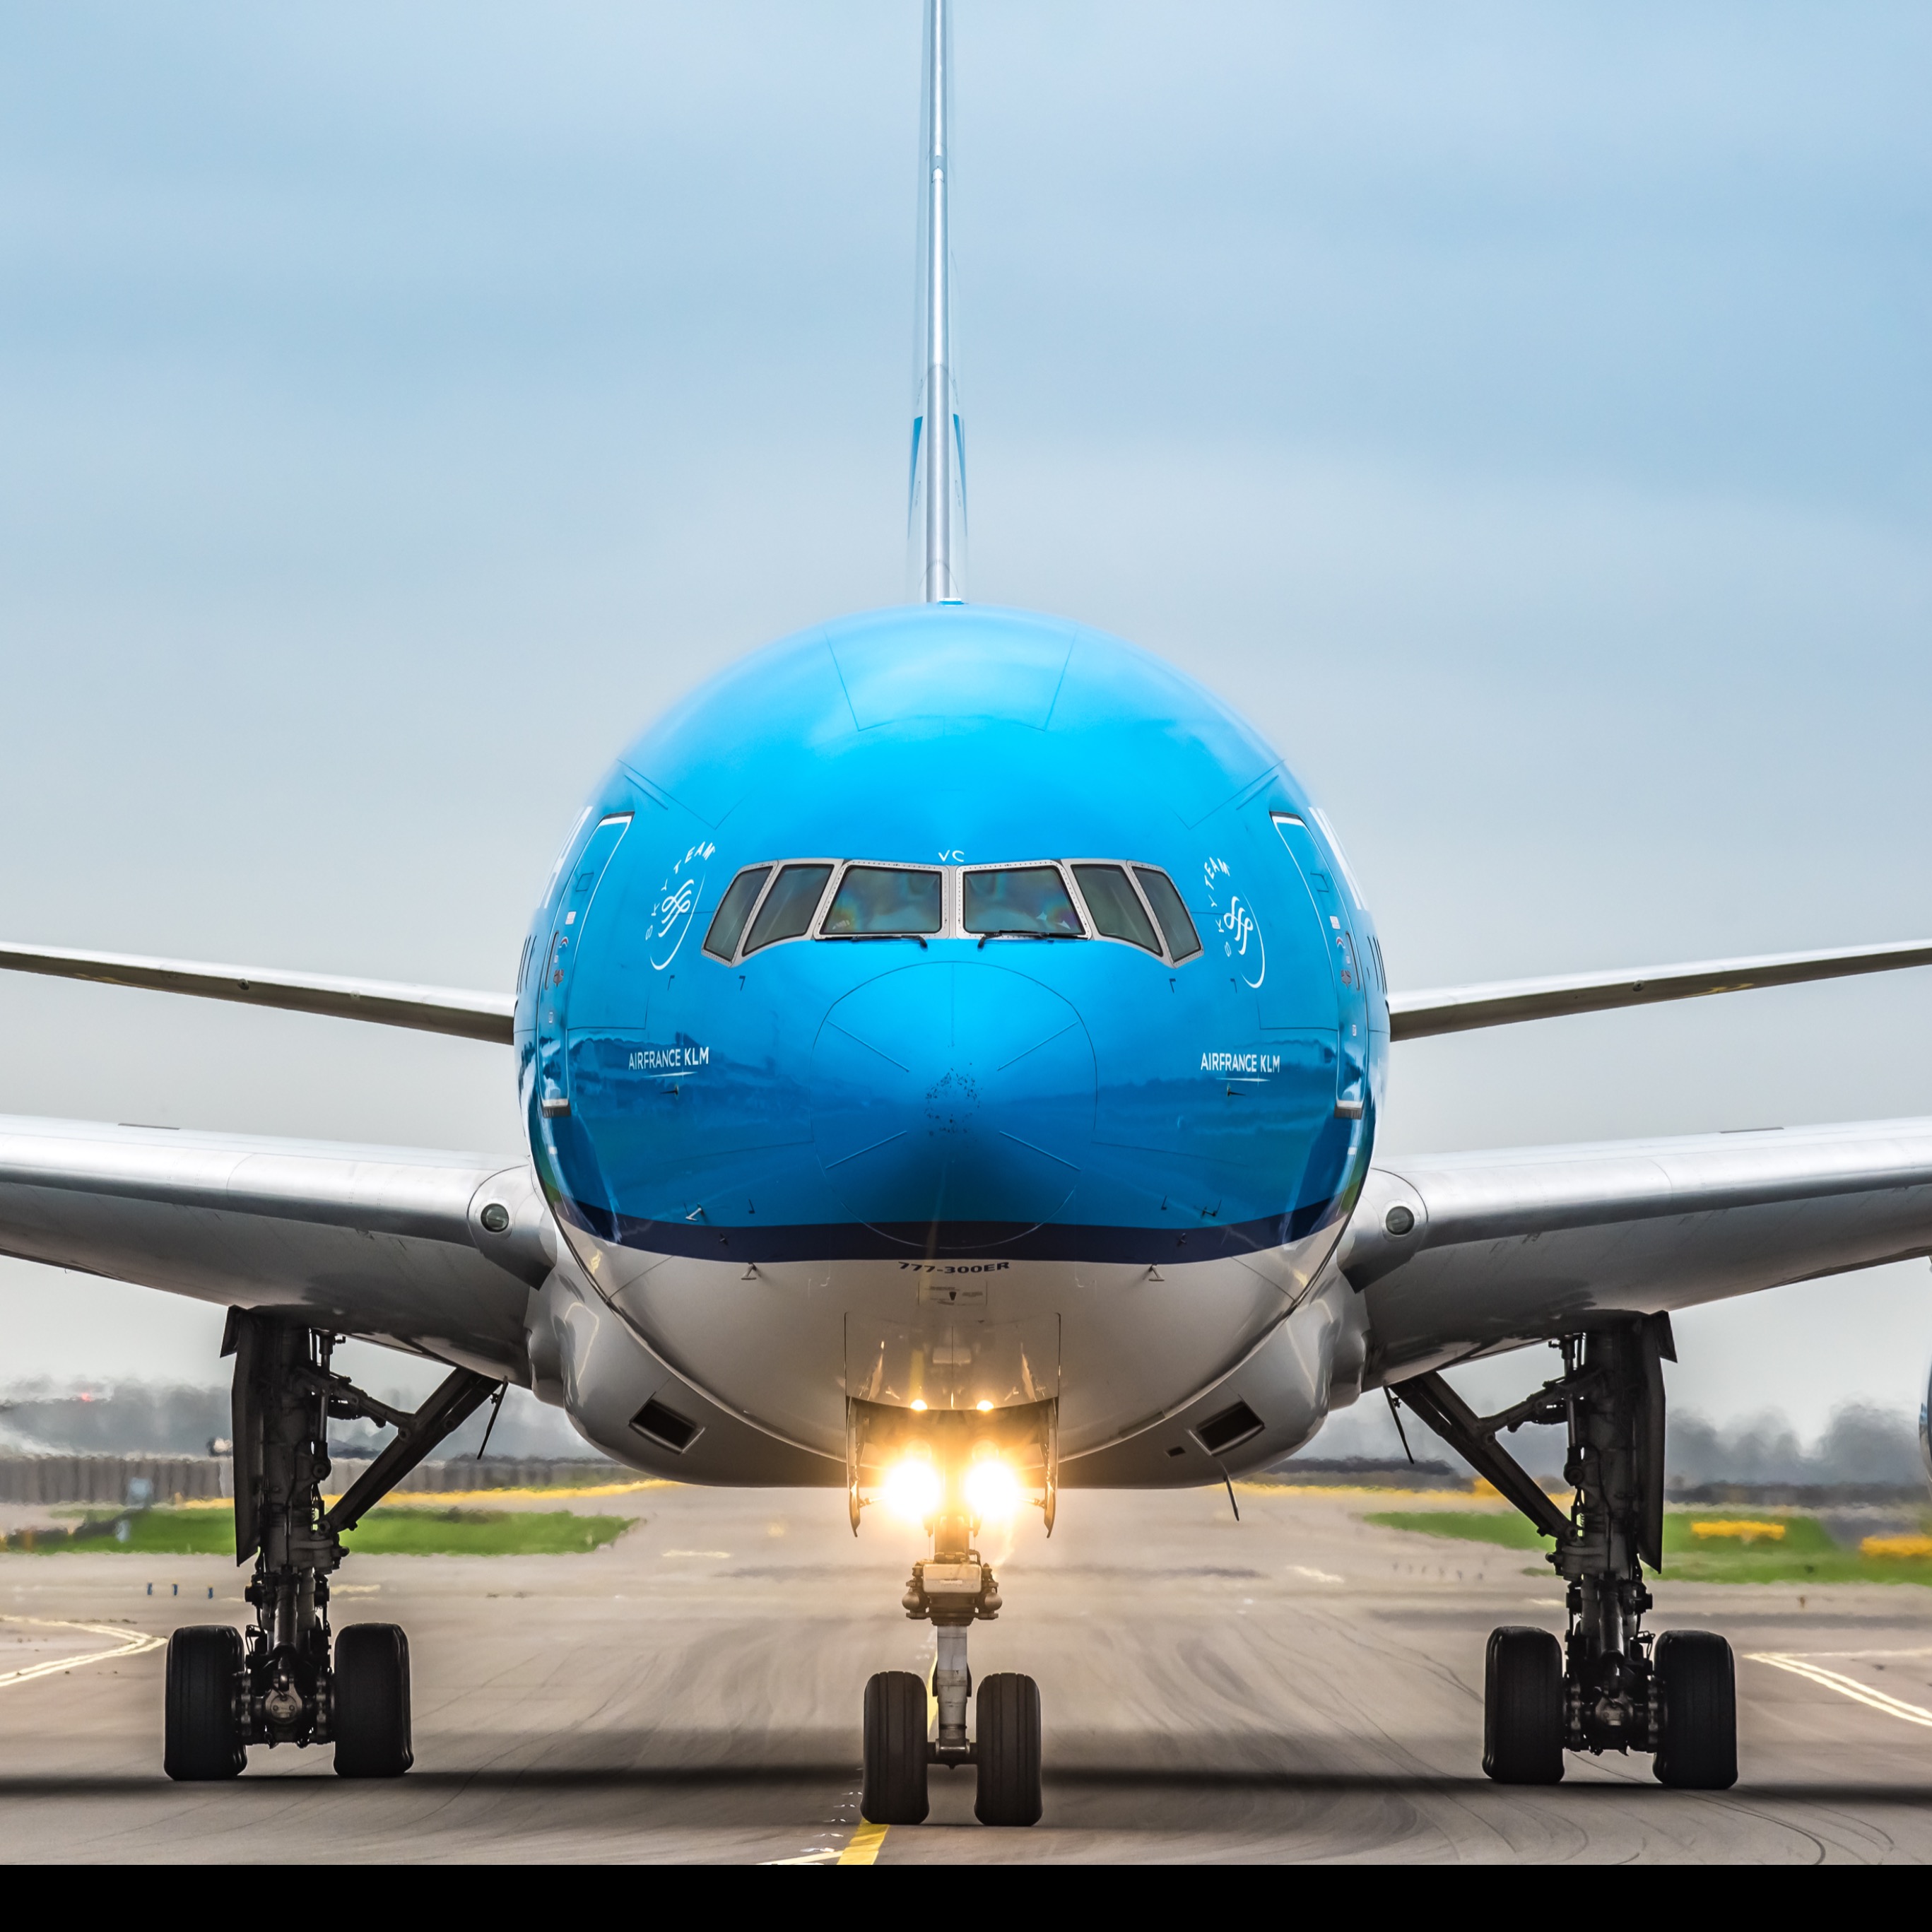 荷兰皇家航空中国航线每周将增加3个航班